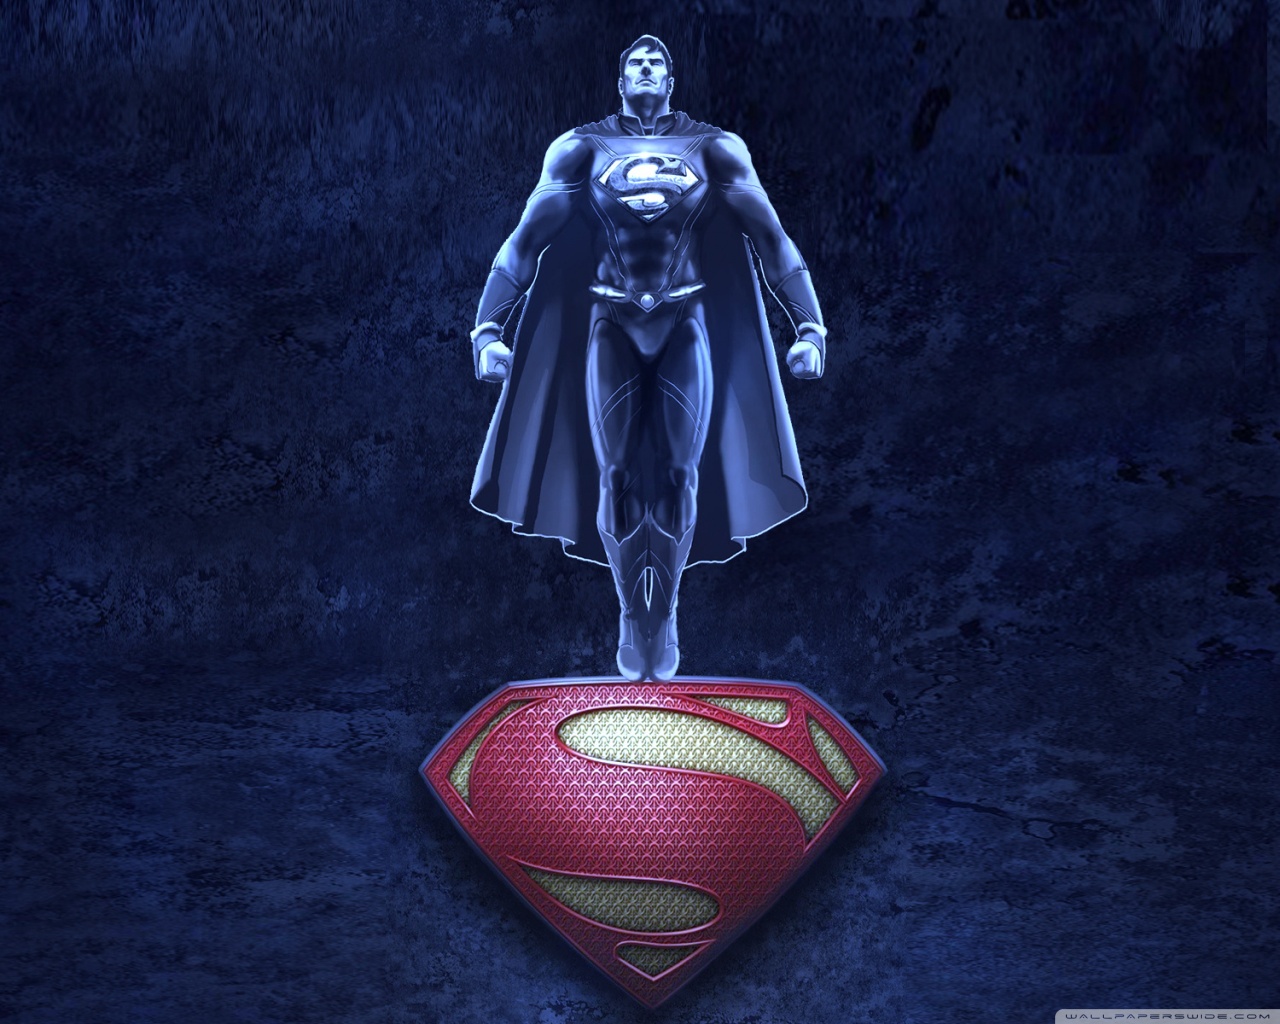 carta da parati superman,superuomo,supereroe,personaggio fittizio,action figure,lega della giustizia